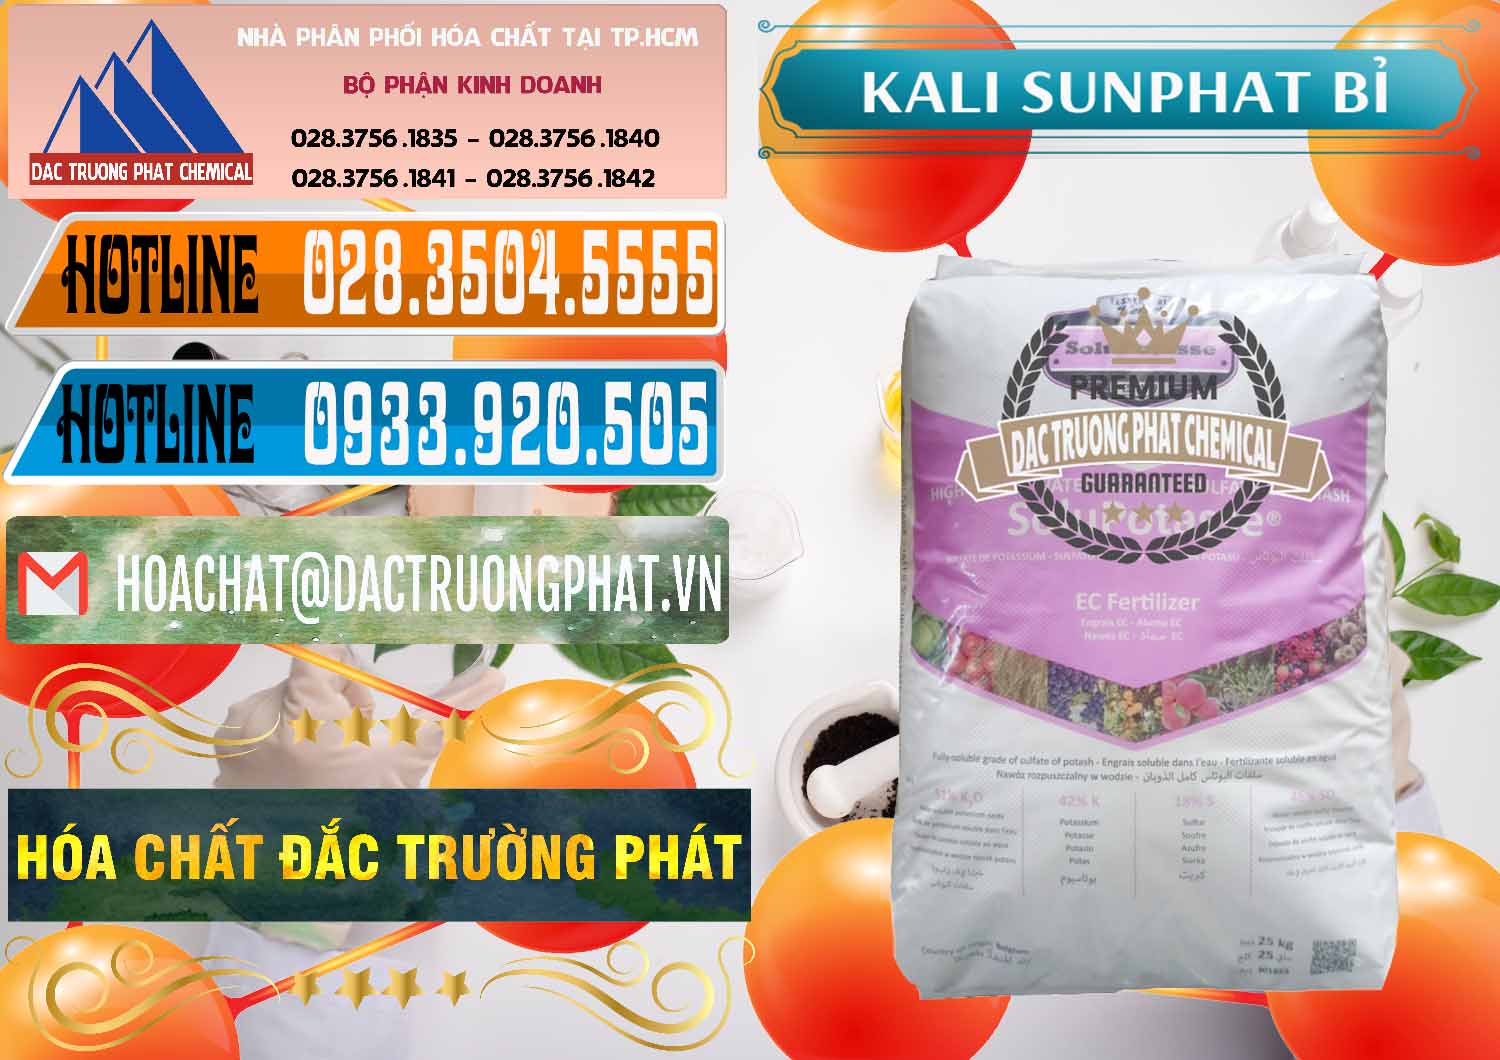 Nơi chuyên cung ứng & bán Kali Sunphat – K2SO4 Bỉ Belgium - 0406 - Cty chuyên nhập khẩu & phân phối hóa chất tại TP.HCM - stmp.net